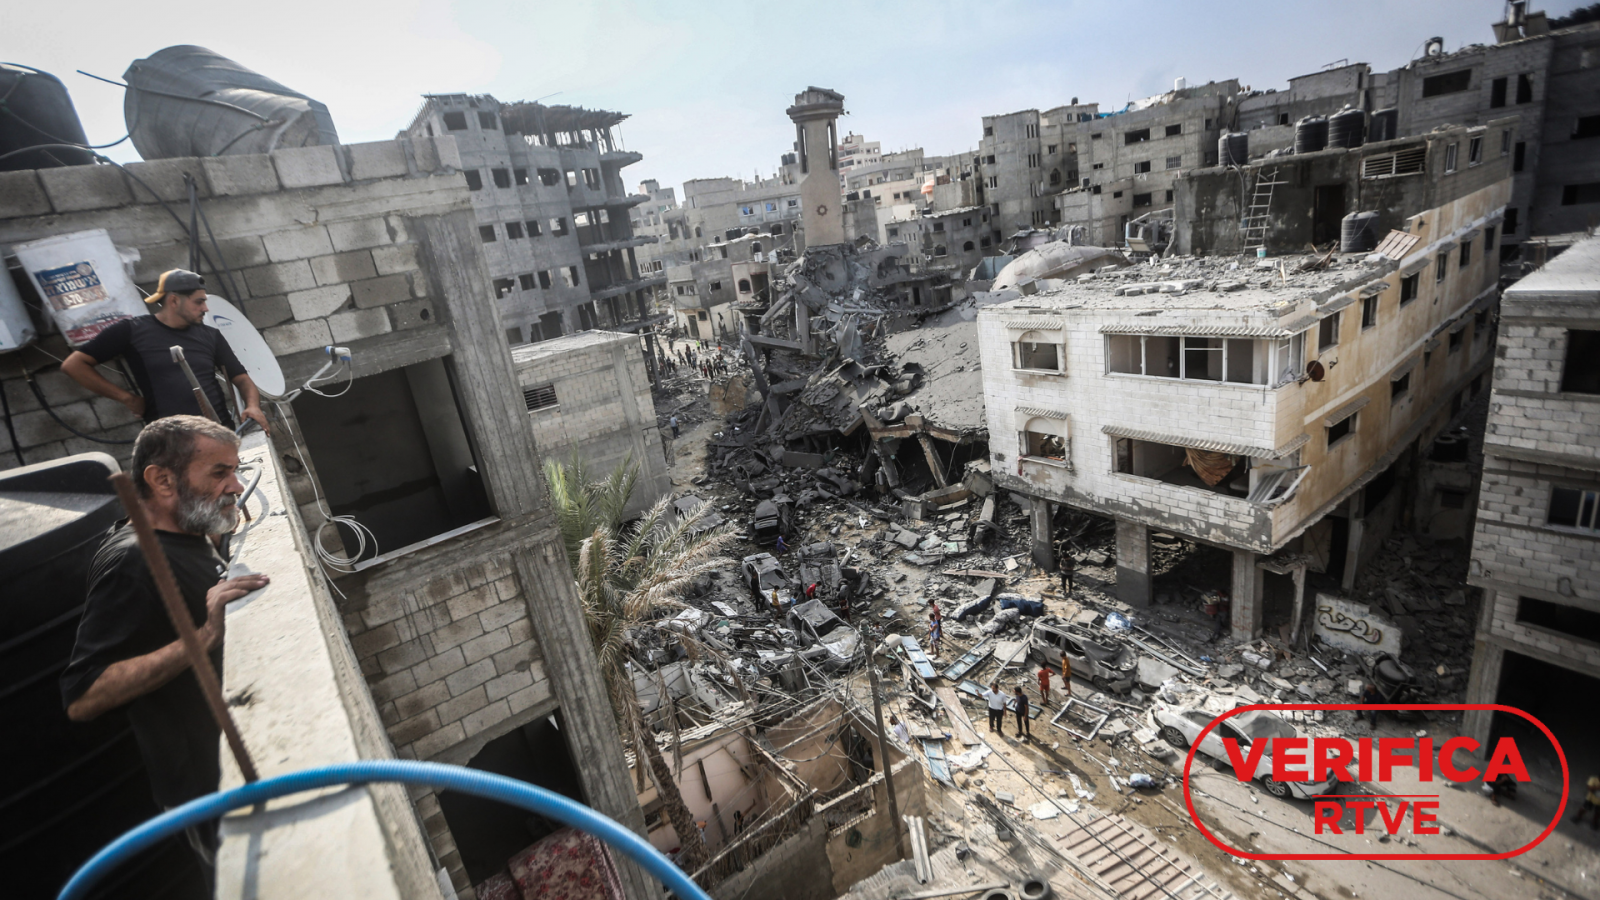 Guerra de Israel y Hamás en Gaza: palestinos inspeccionan la destrucción tras ataques aéreos israelíes en Gaza con el sello VerificaRTVE